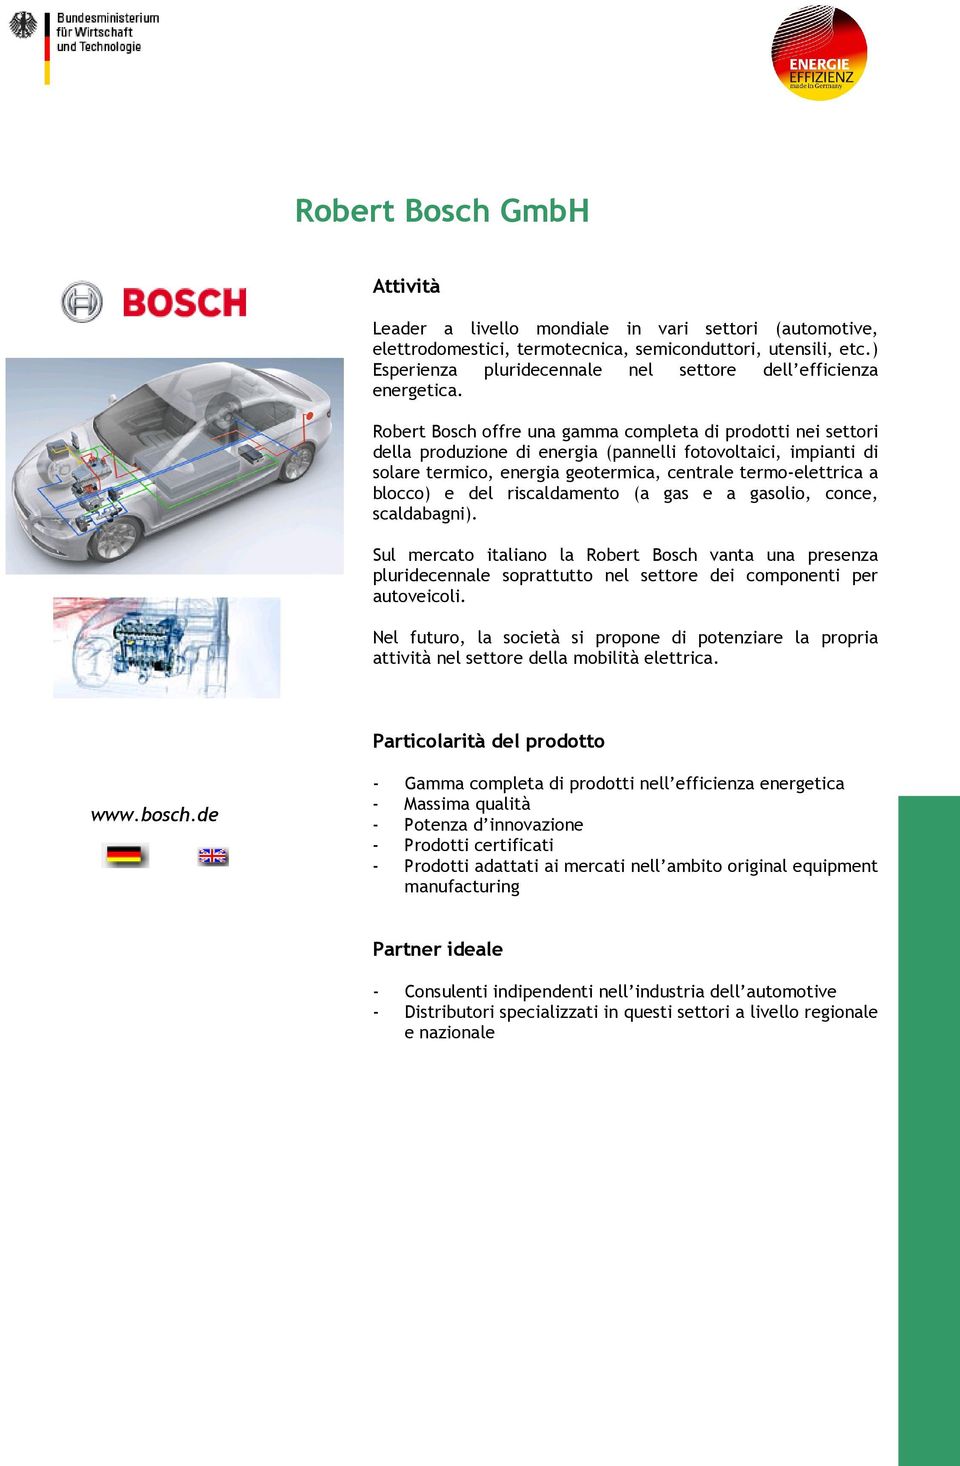 Robert Bosch offre una gamma completa di prodotti nei settori della produzione di energia (pannelli fotovoltaici, impianti di solare termico, energia geotermica, centrale termo-elettrica a blocco) e